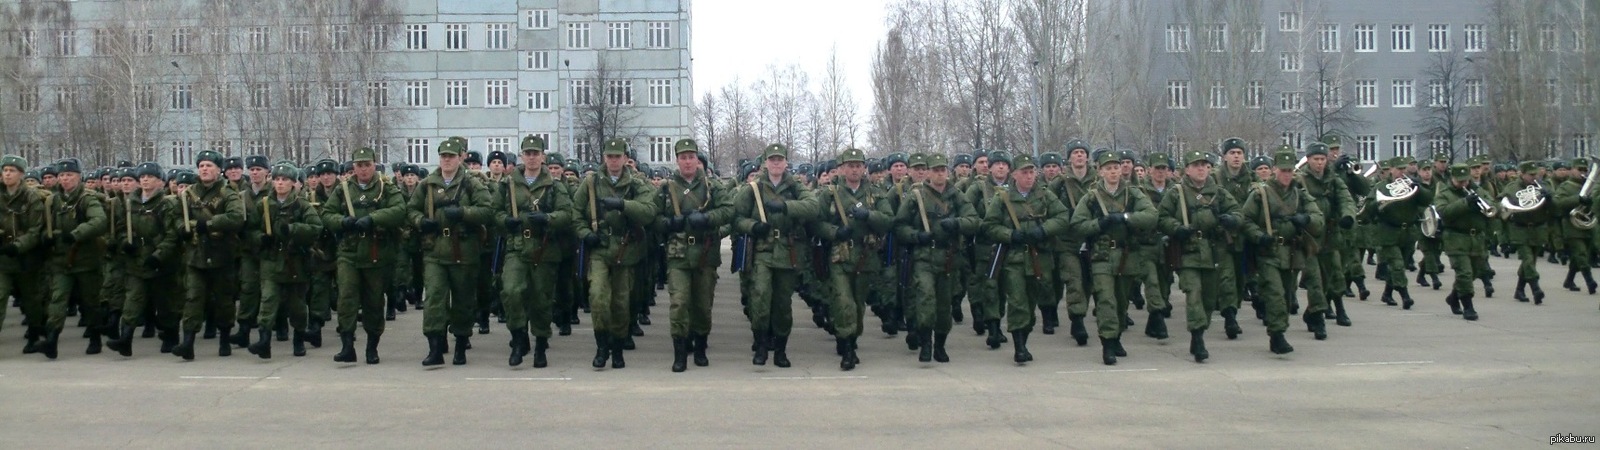 31 бригада вдв ульяновск фото